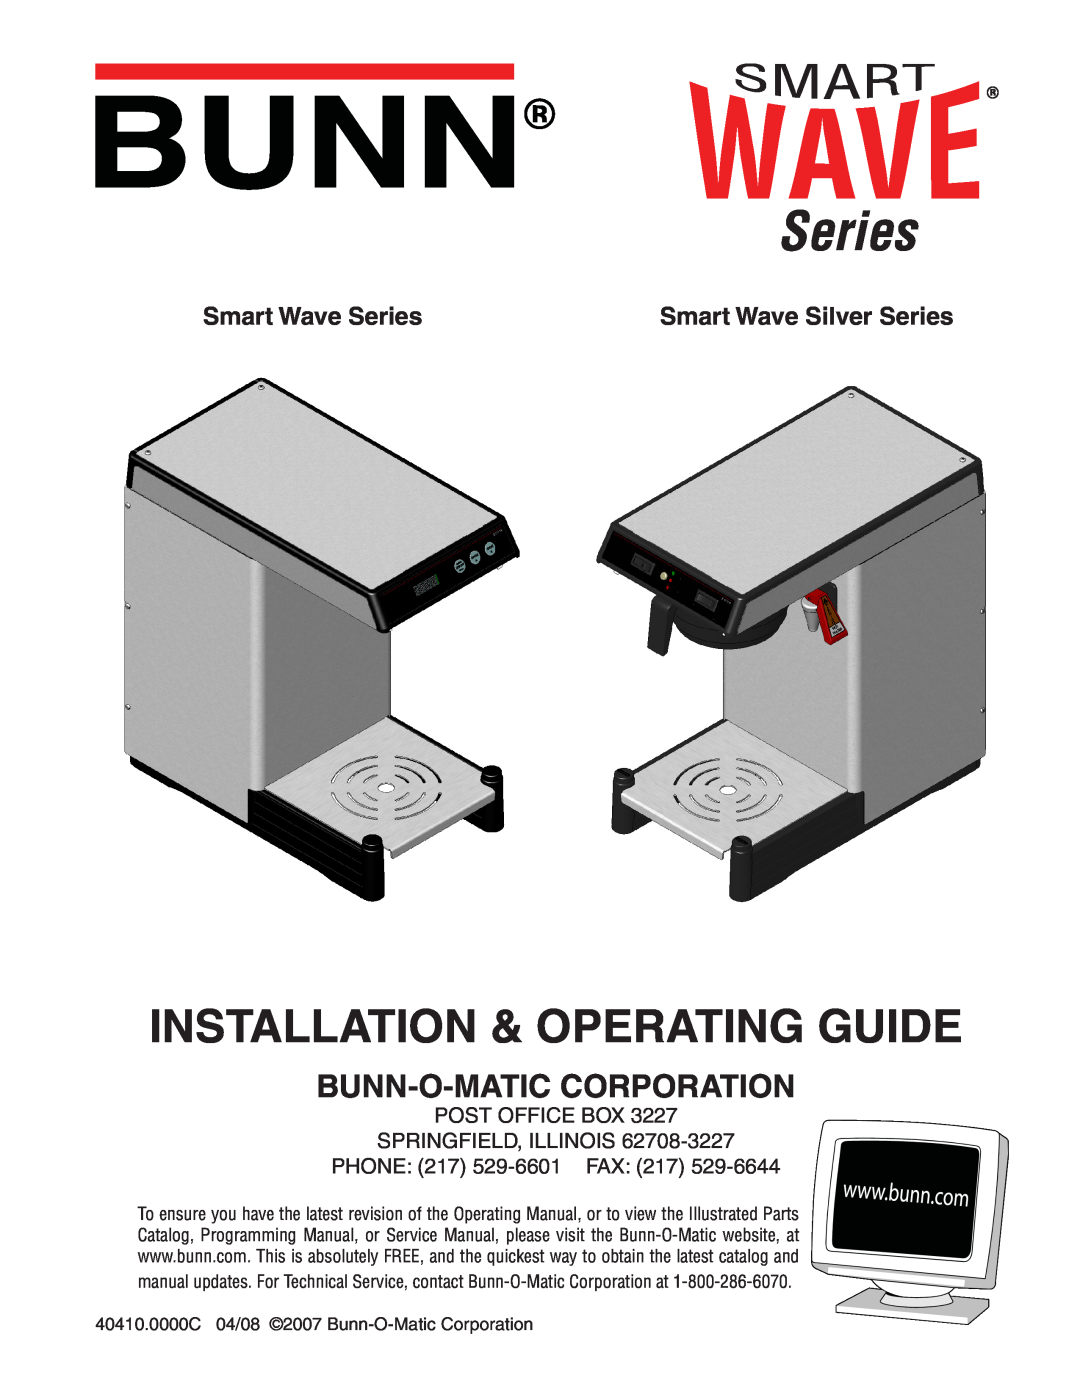 Bunn Smart Wave Silver Series manual Bunn-O-Maticcorporation, Smart Wave Series, Installation & Operating Guide 